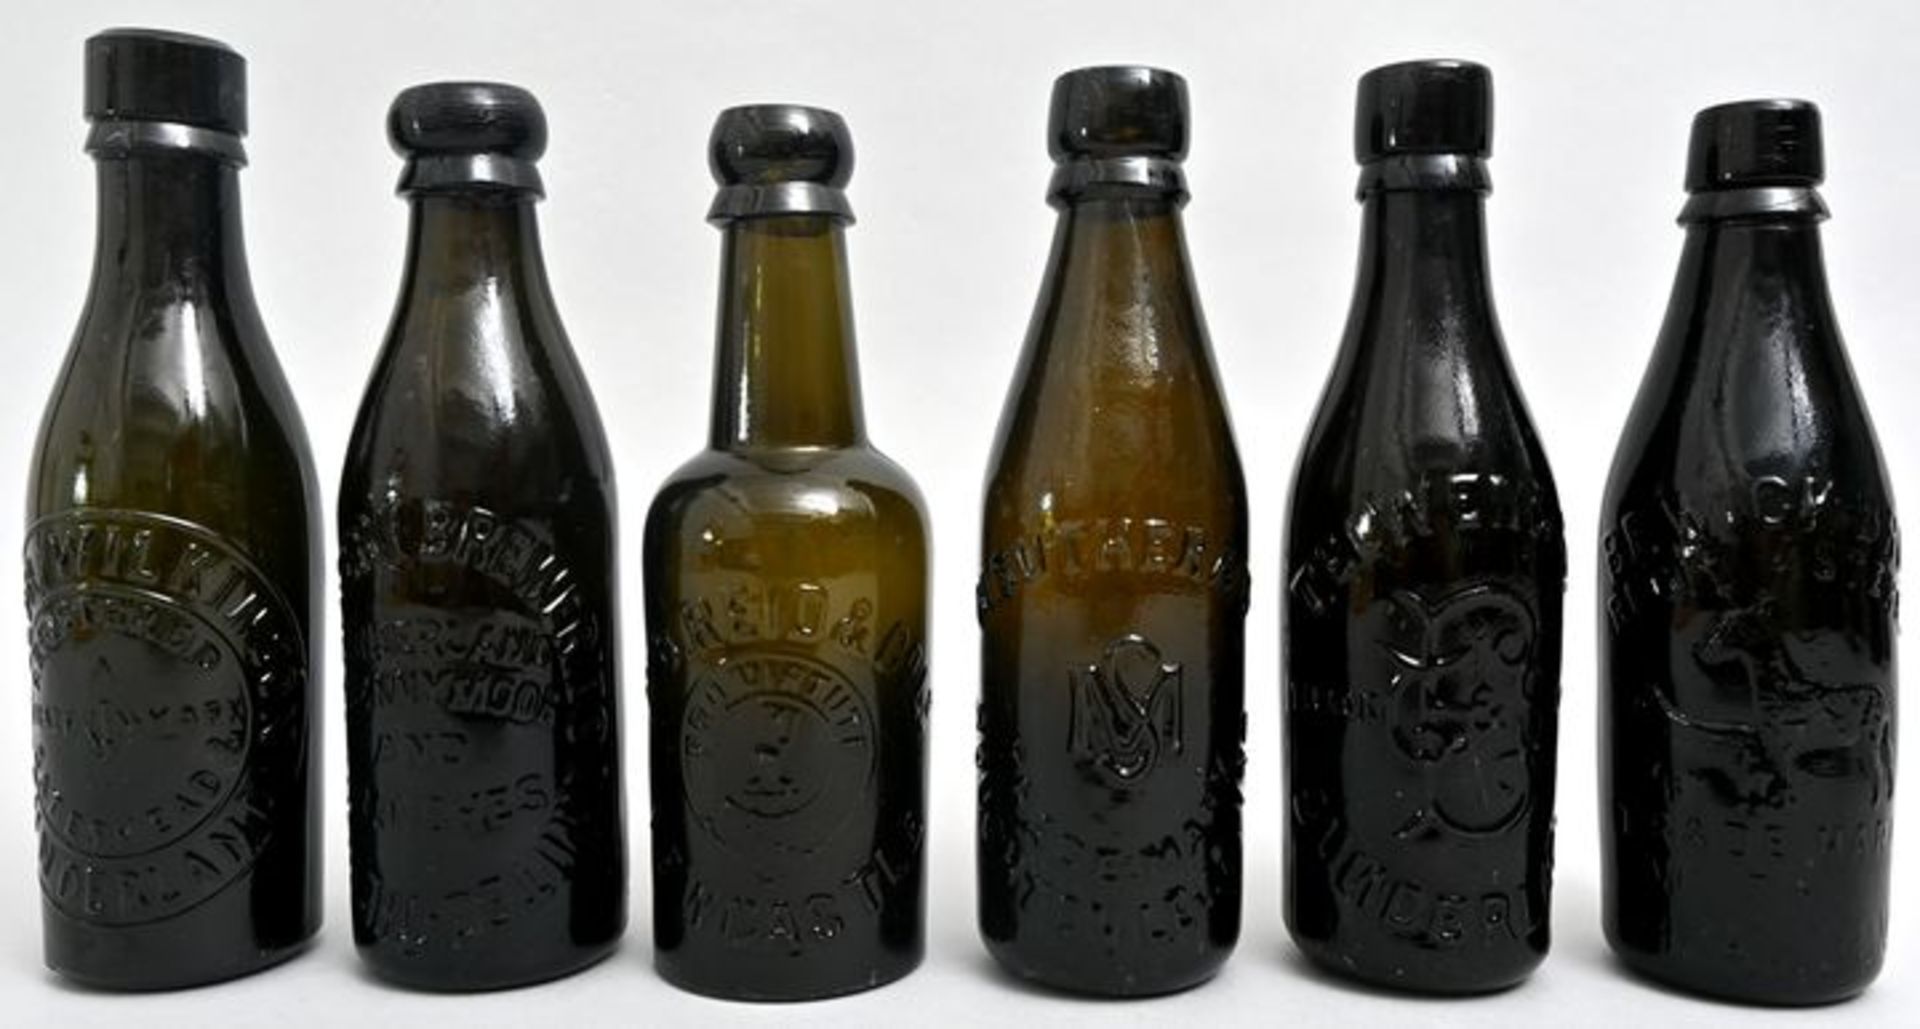 Konvolut von sechs Bierflaschen / Set of six beer bottles